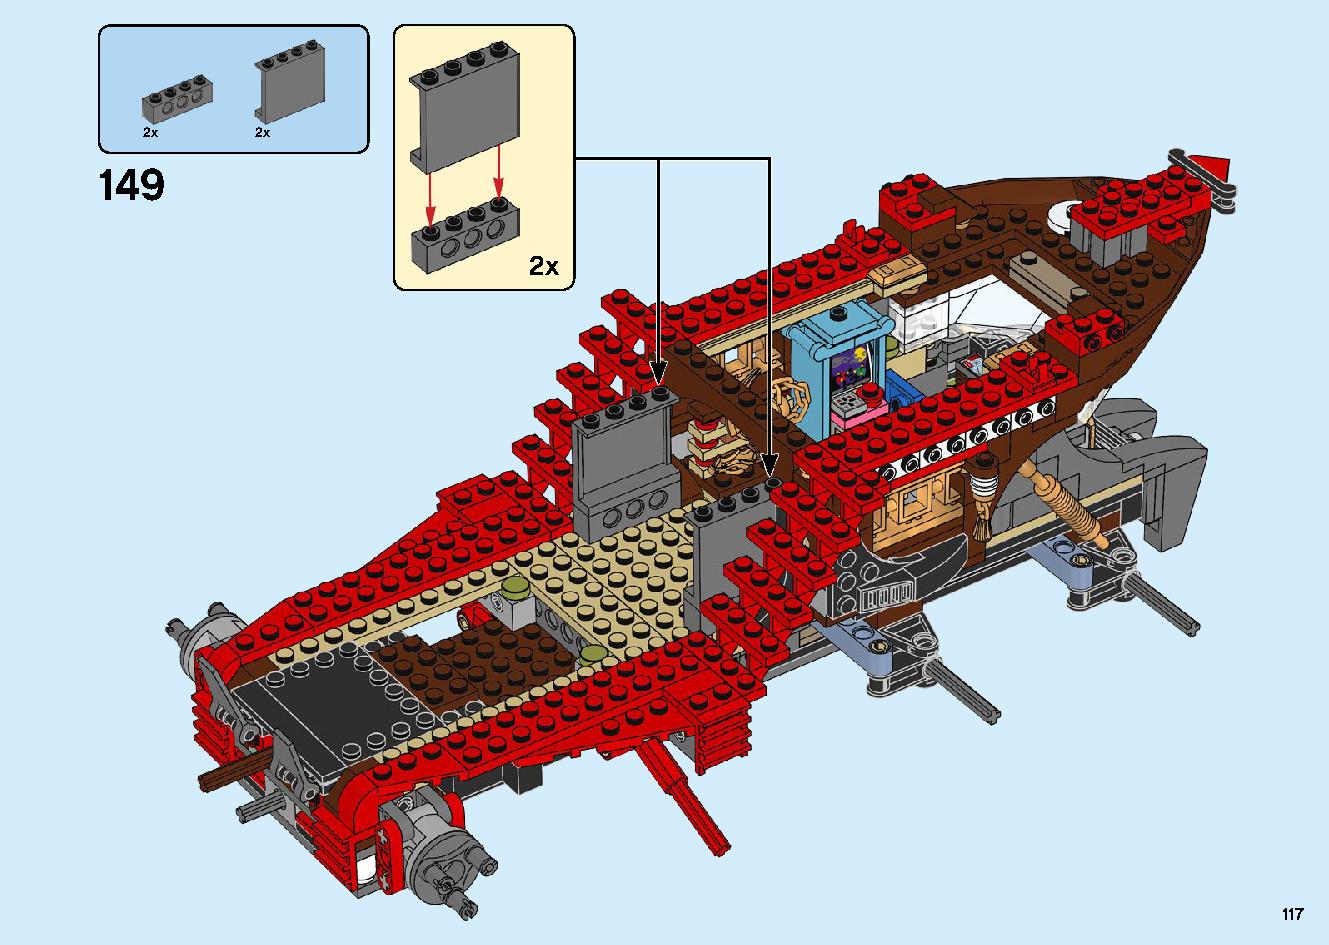 陸上戦艦バウンティ号 70677 レゴの商品情報 レゴの説明書・組立方法 117 page